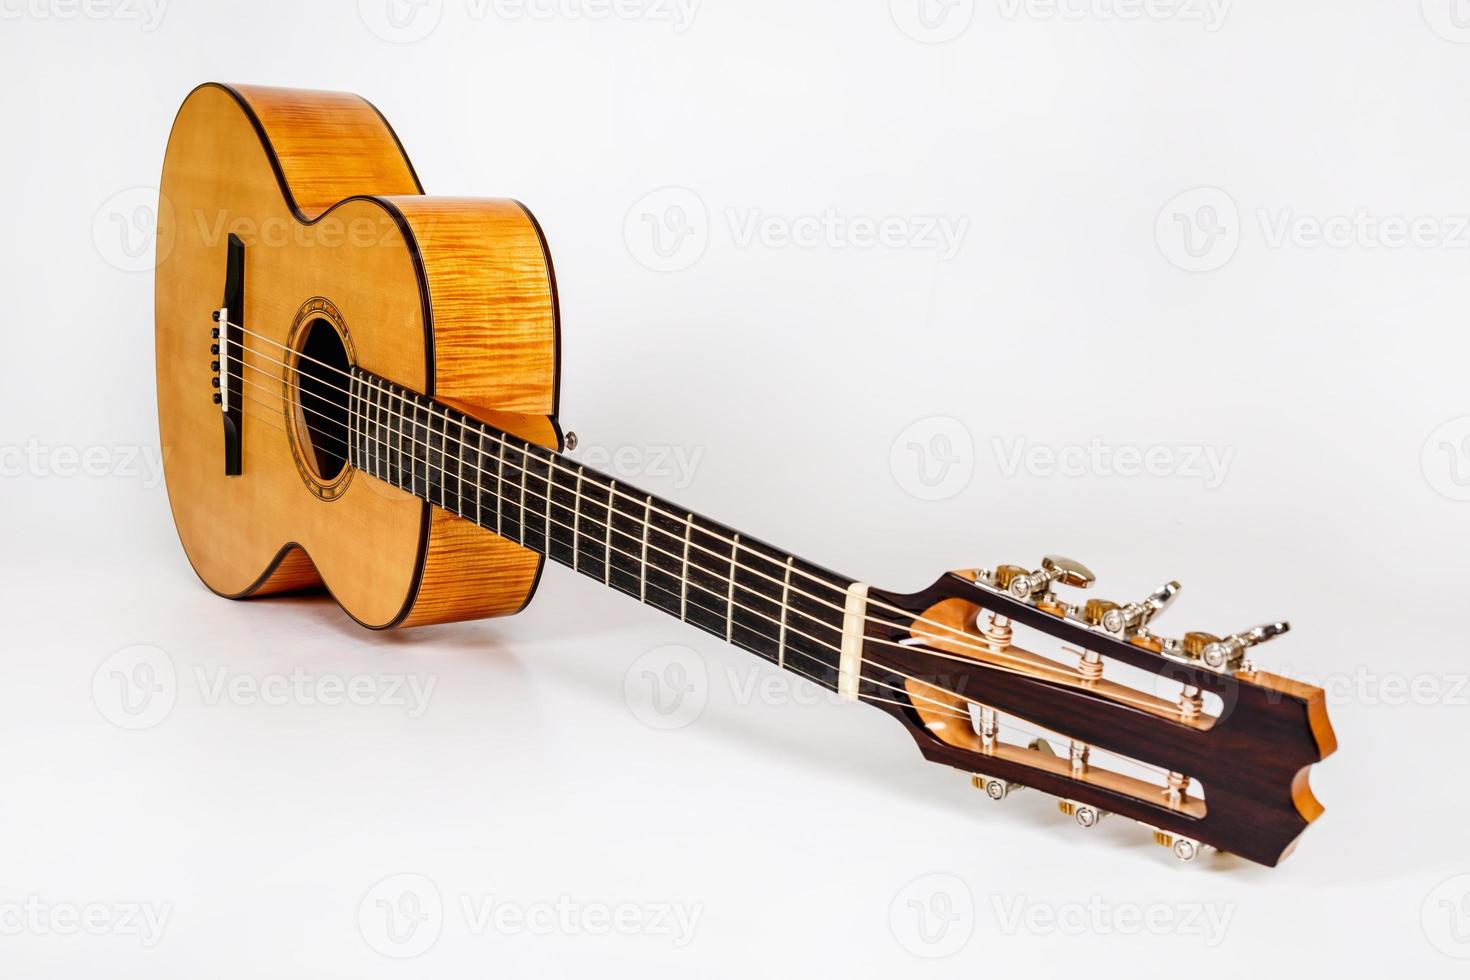 Holzstruktur des Unterdecks der sechssaitigen Akustikgitarre auf weißem Hintergrund. Gitarrenform foto